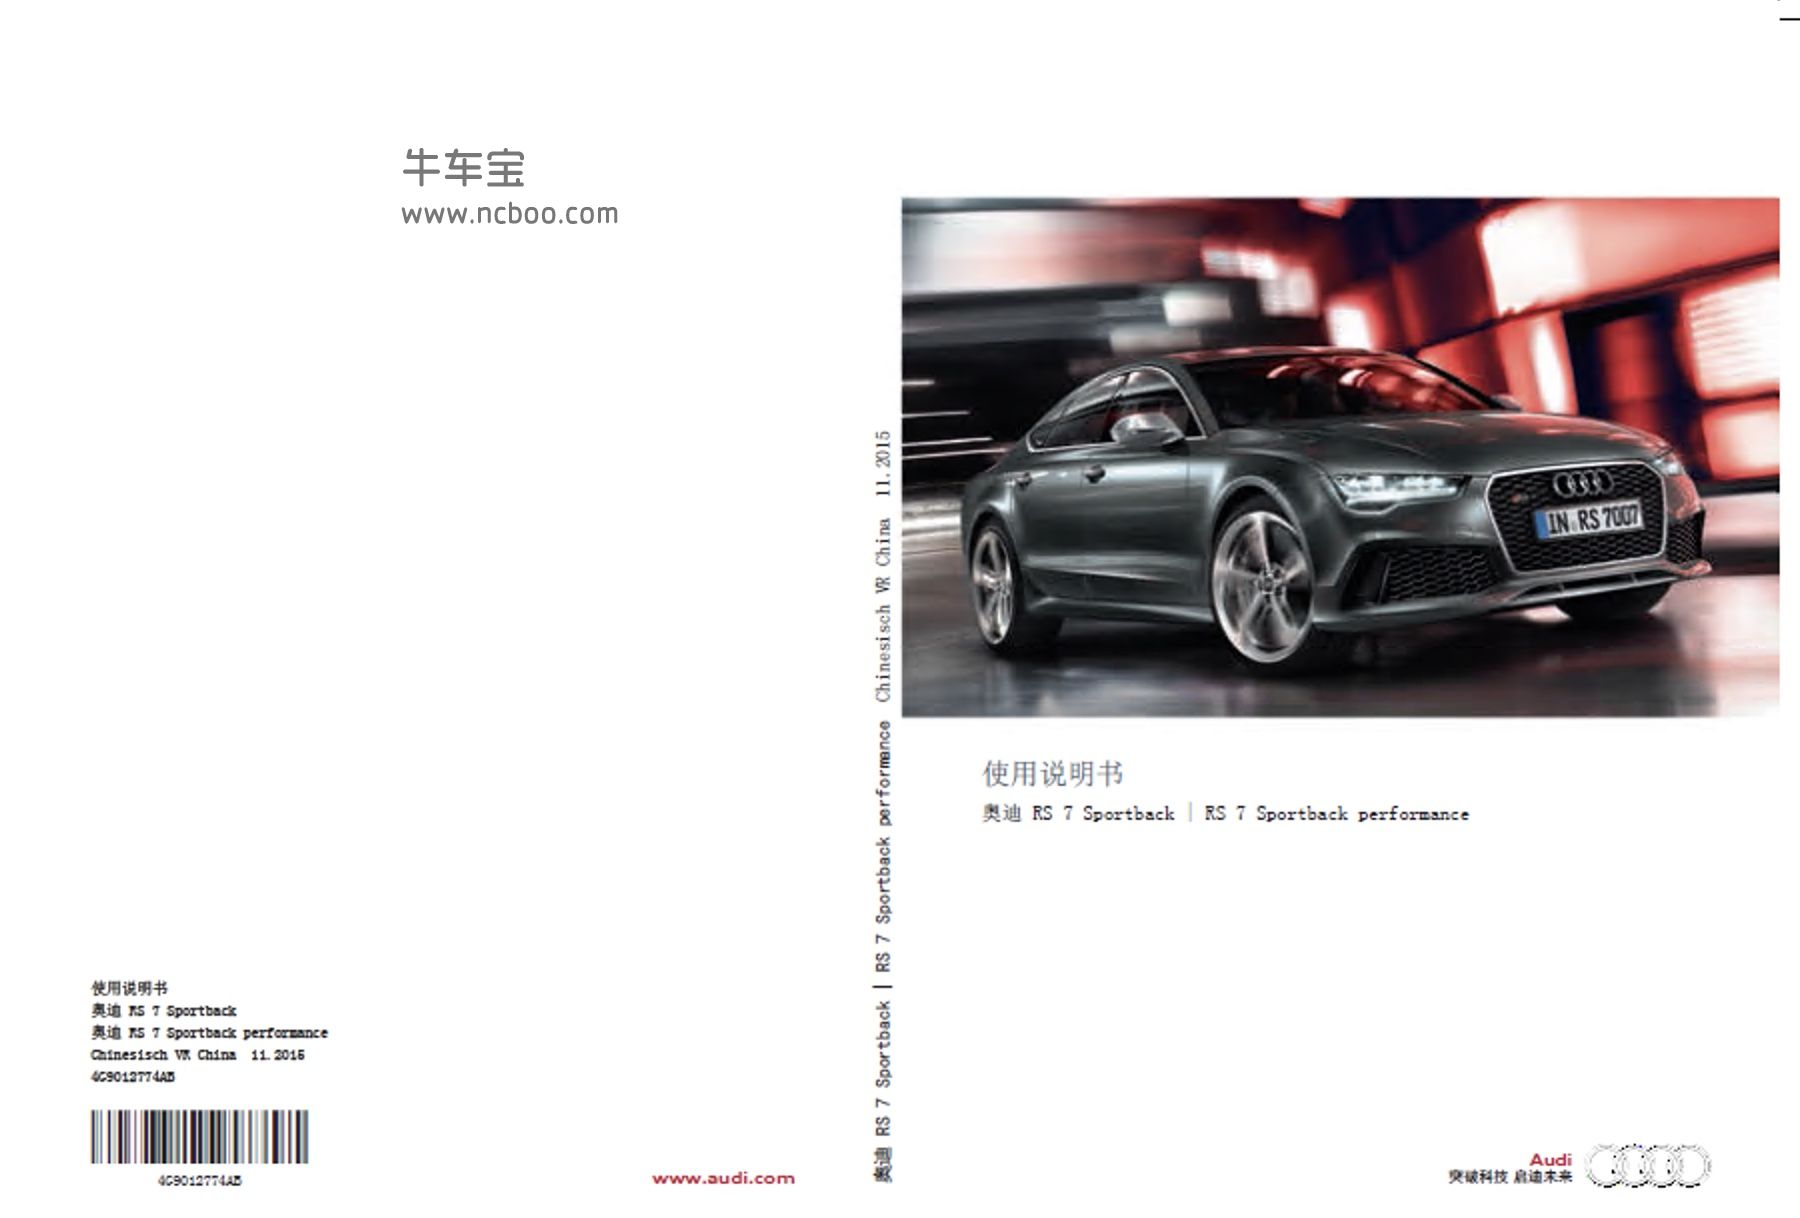 2017款进口奥迪RS7 Sportback产品使用说明书pdf下载